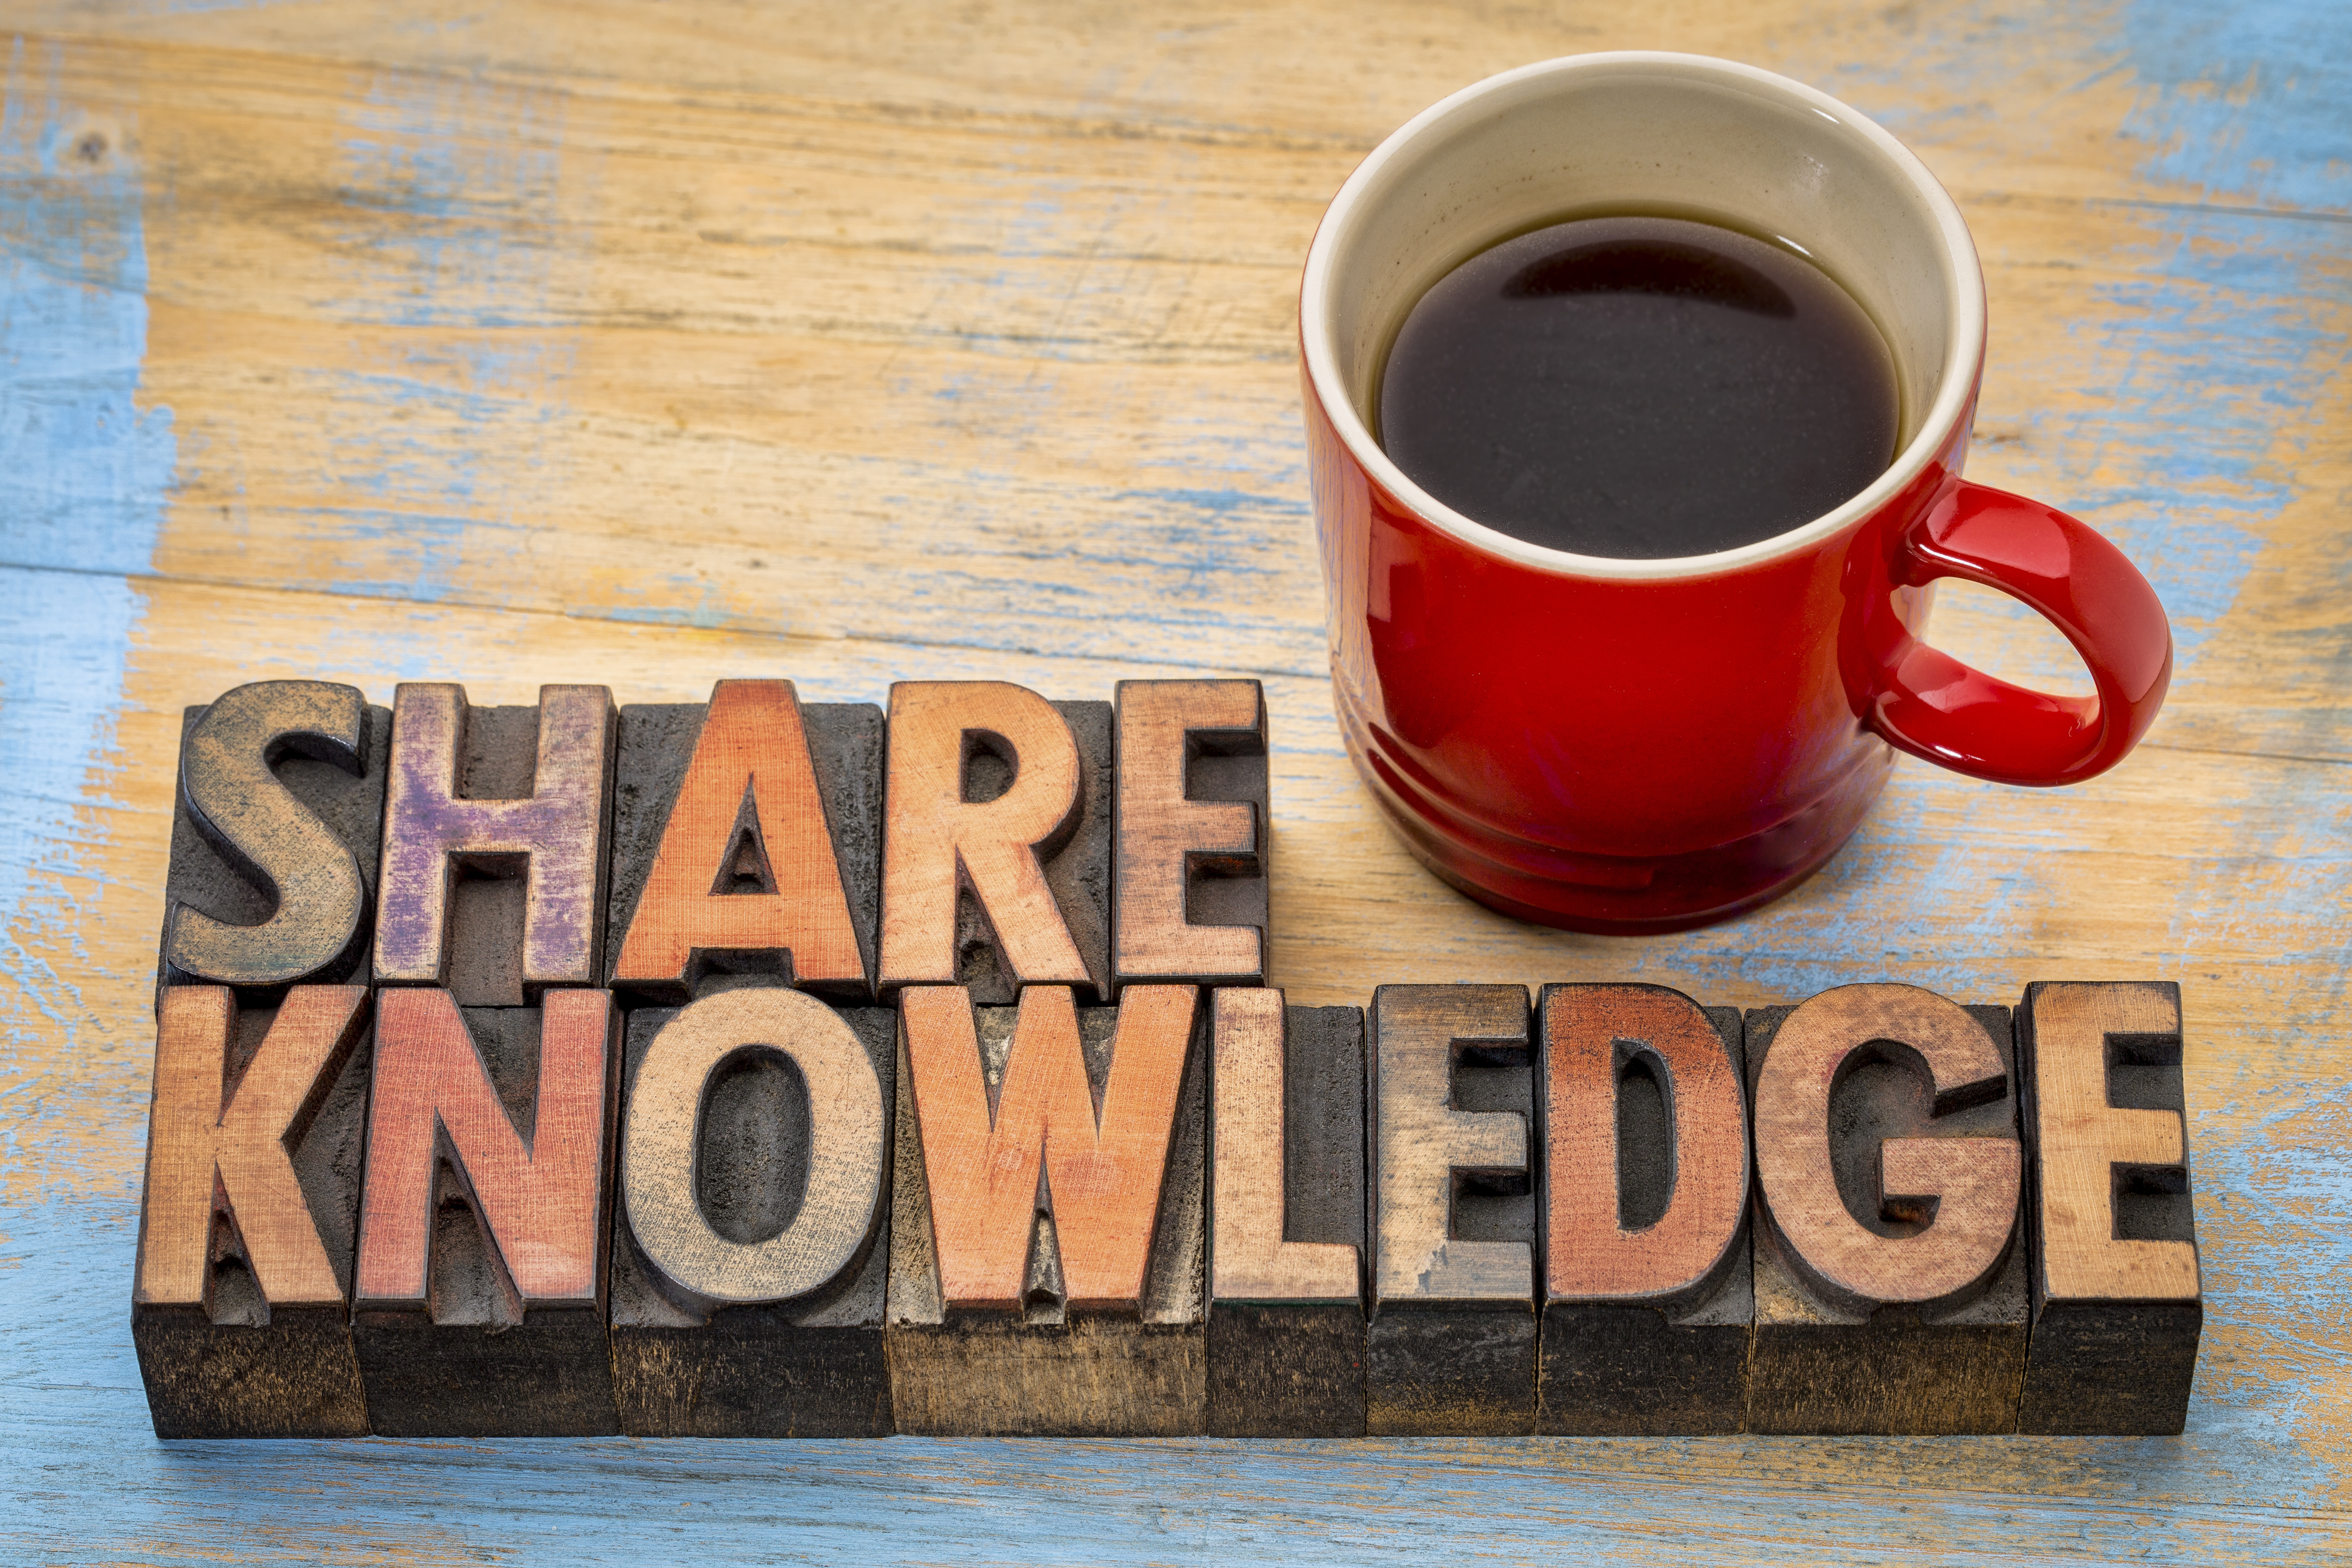 ナレッジシェアのイメージ画像。「SHARE KNOWLEDGE」と書かれた木製のピースとコーヒーの写真